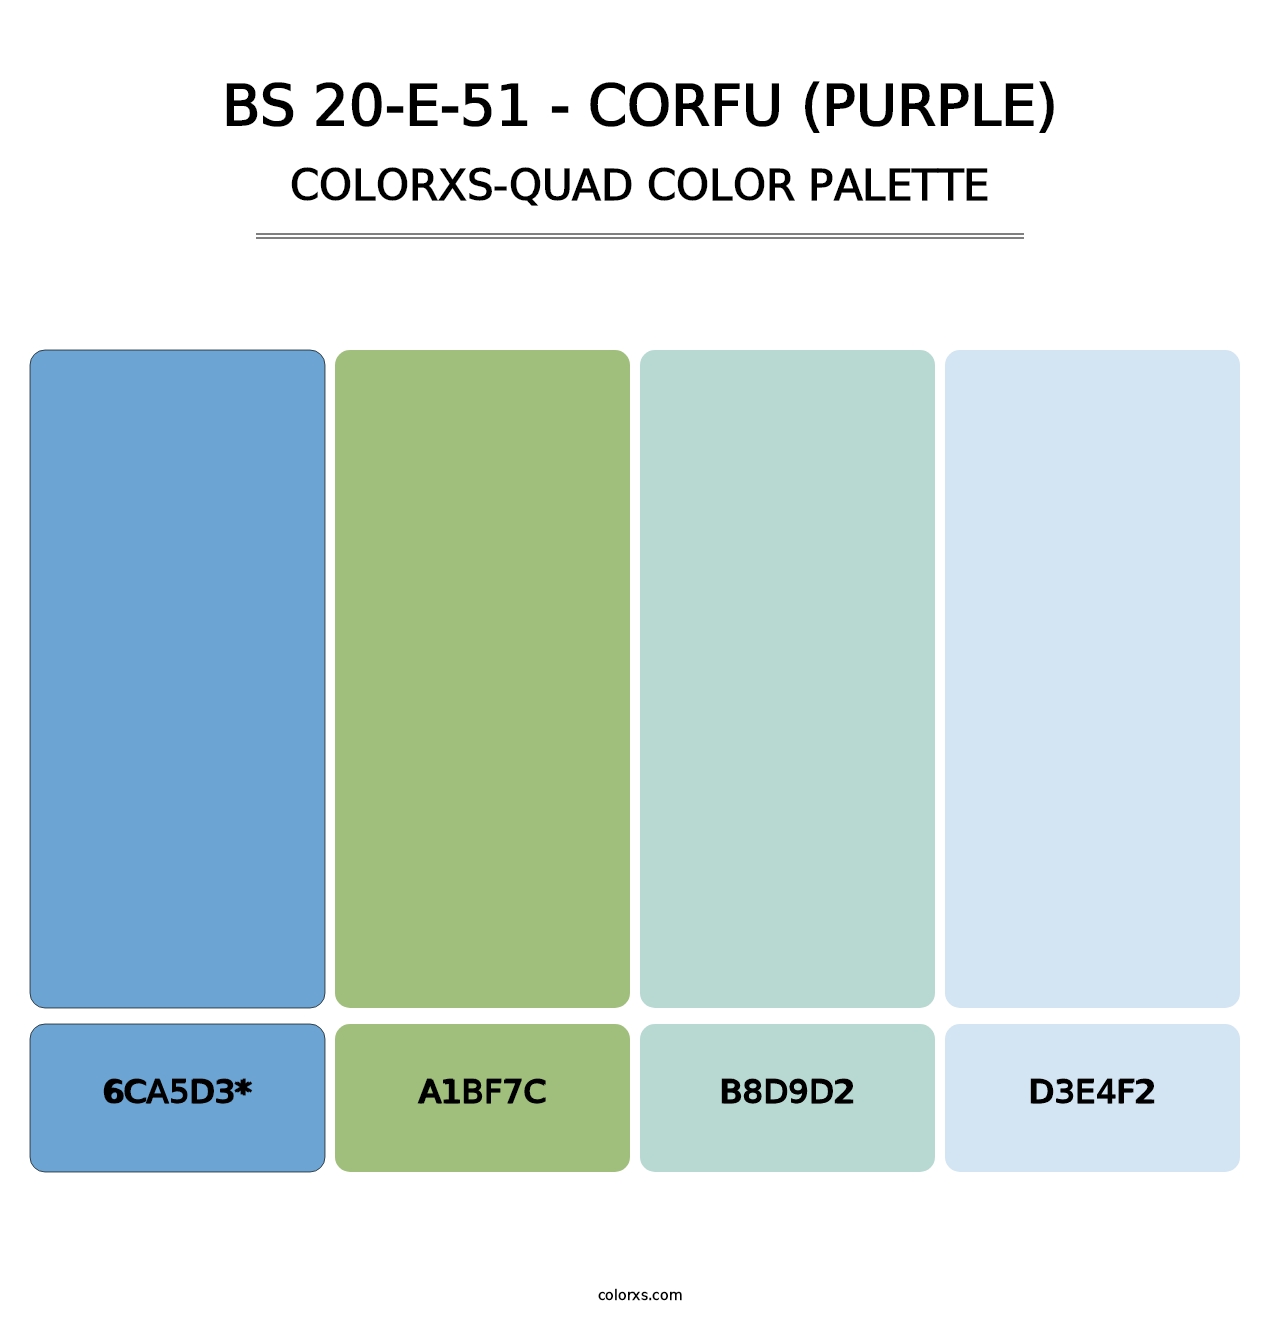 BS 20-E-51 - Corfu (Purple) - Colorxs Quad Palette